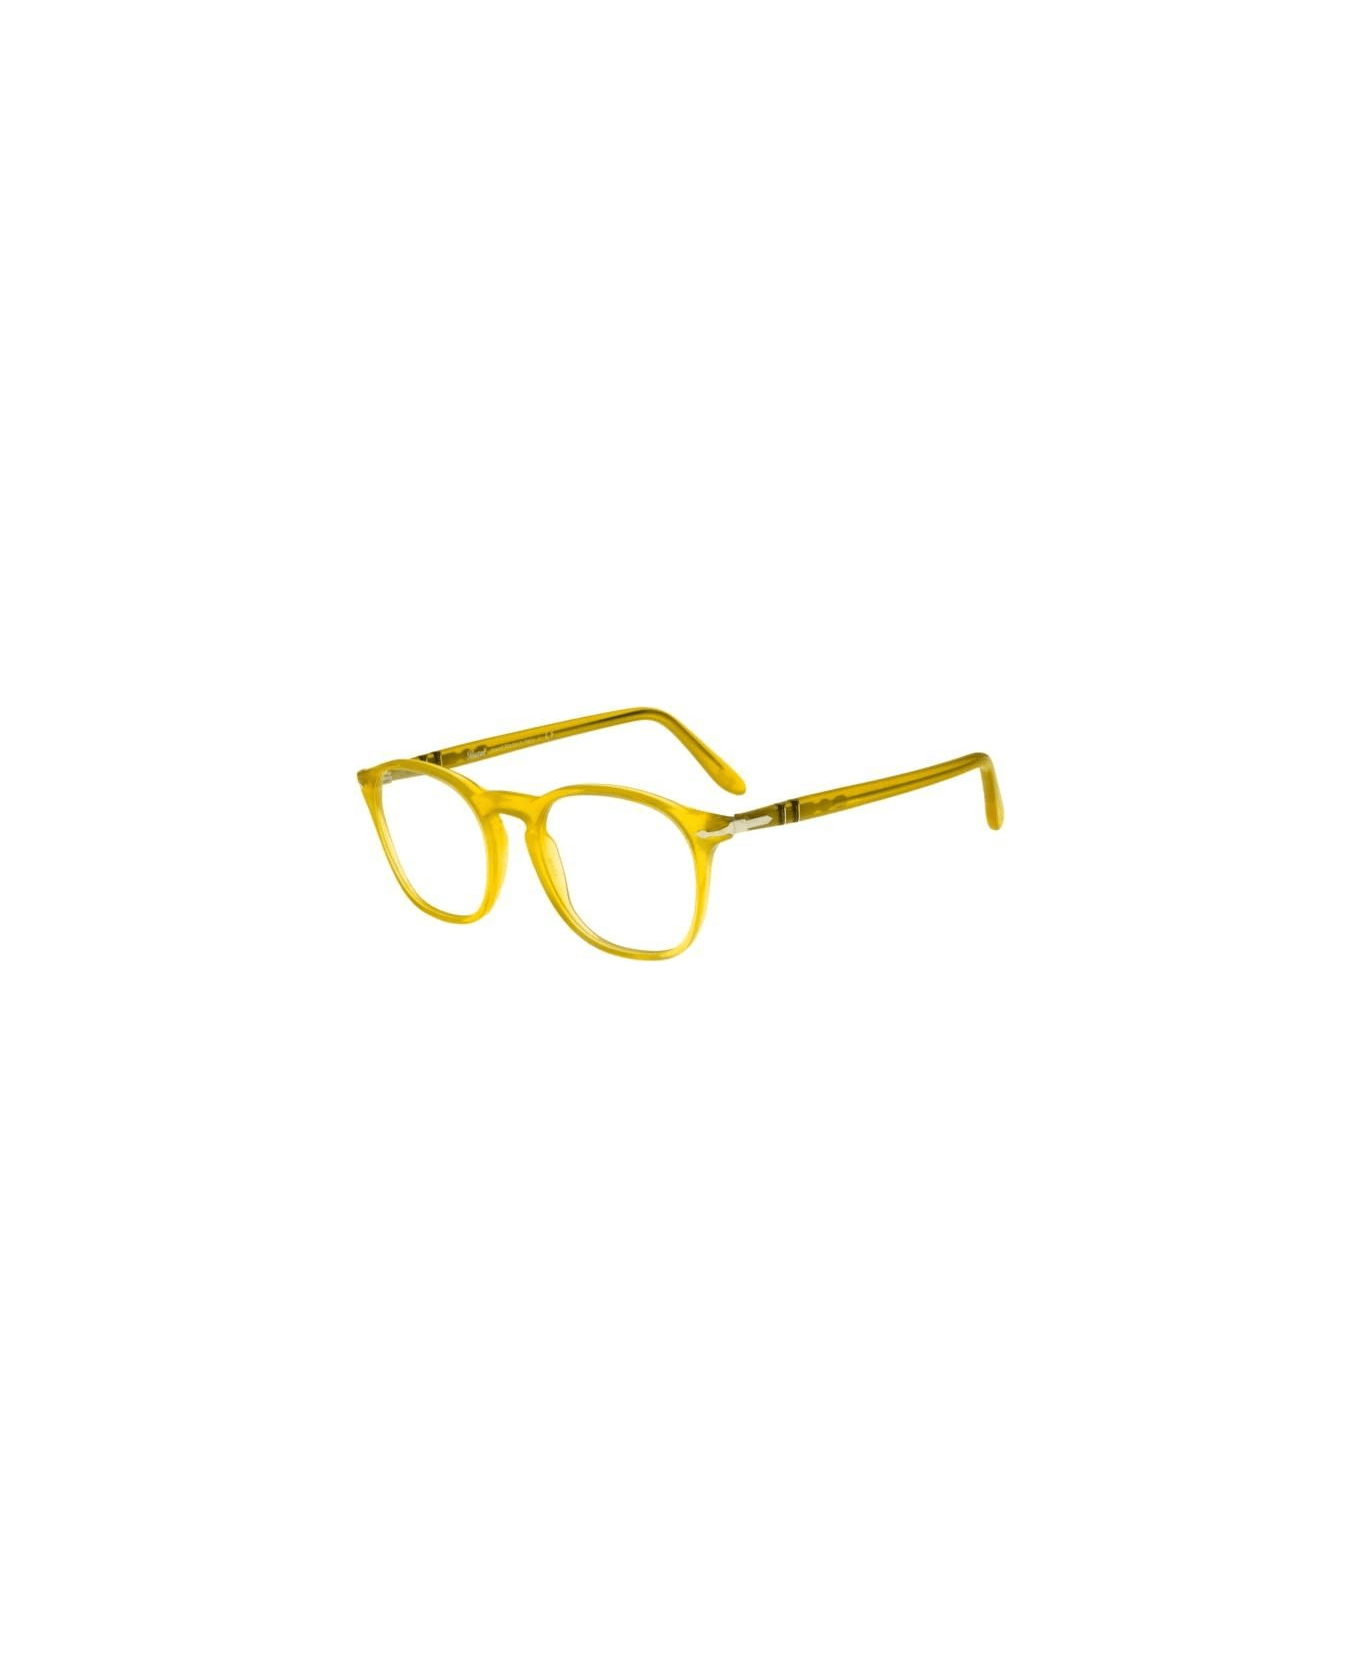 Persol Po3007v Miele Limited Edition Glasses - Giallo